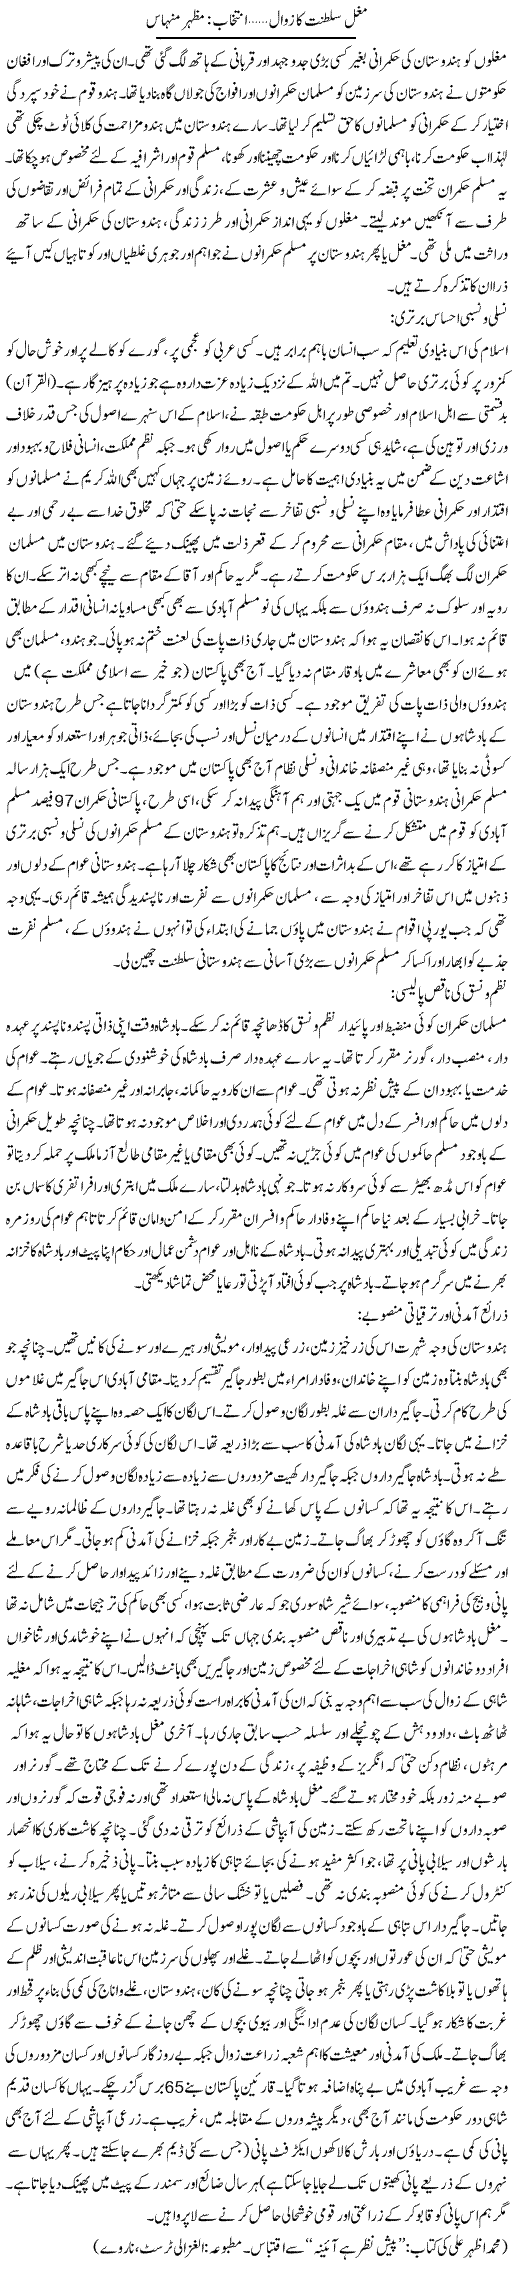 Mughlia Saltanat Ka Zawal In Urdu Pdf Download